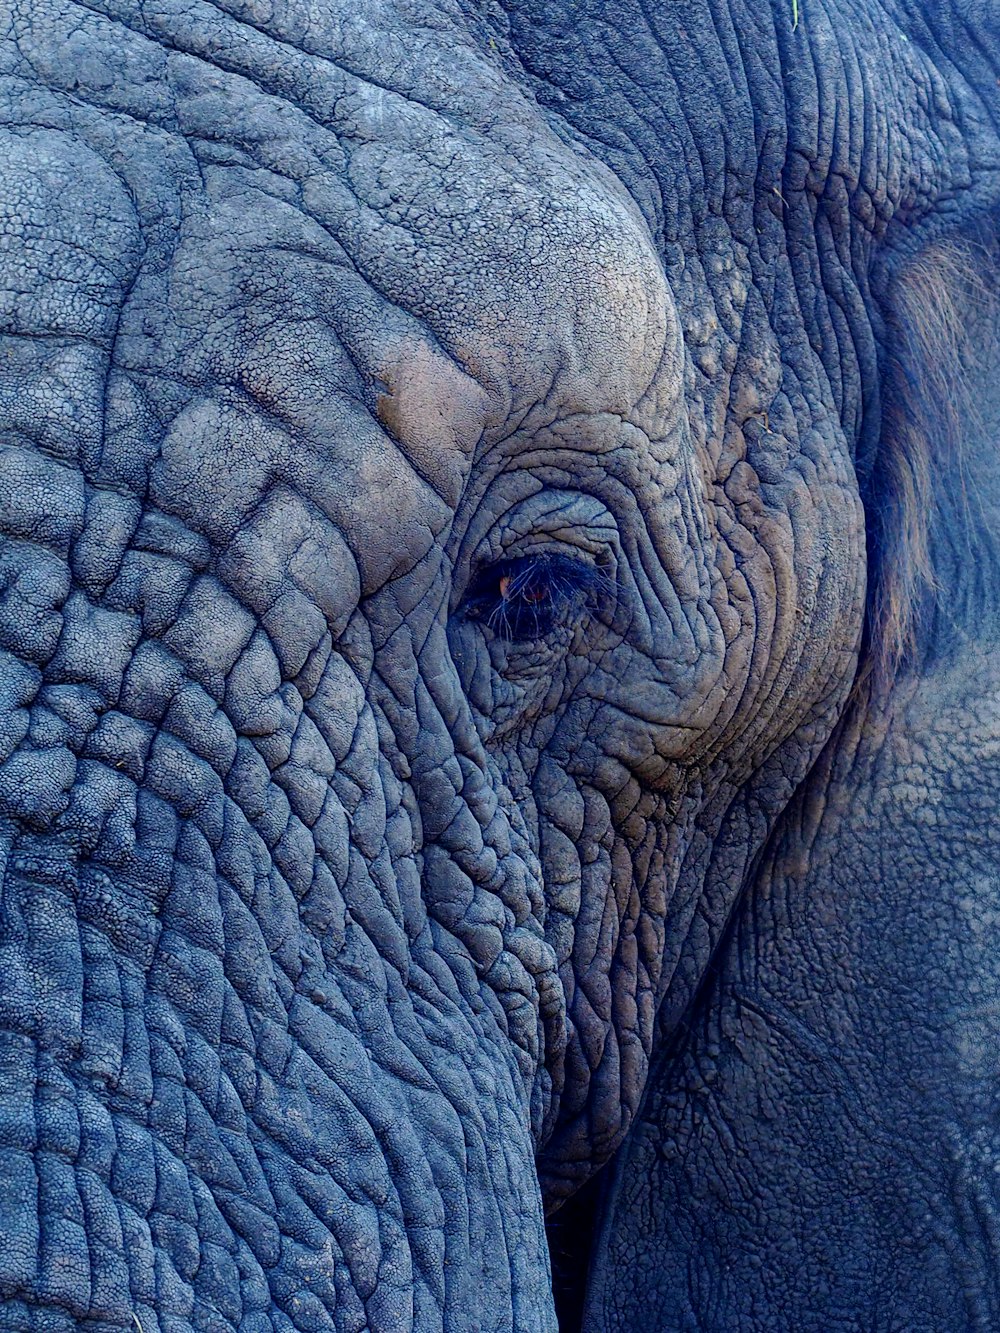 Macrophotographie du visage de l’éléphant